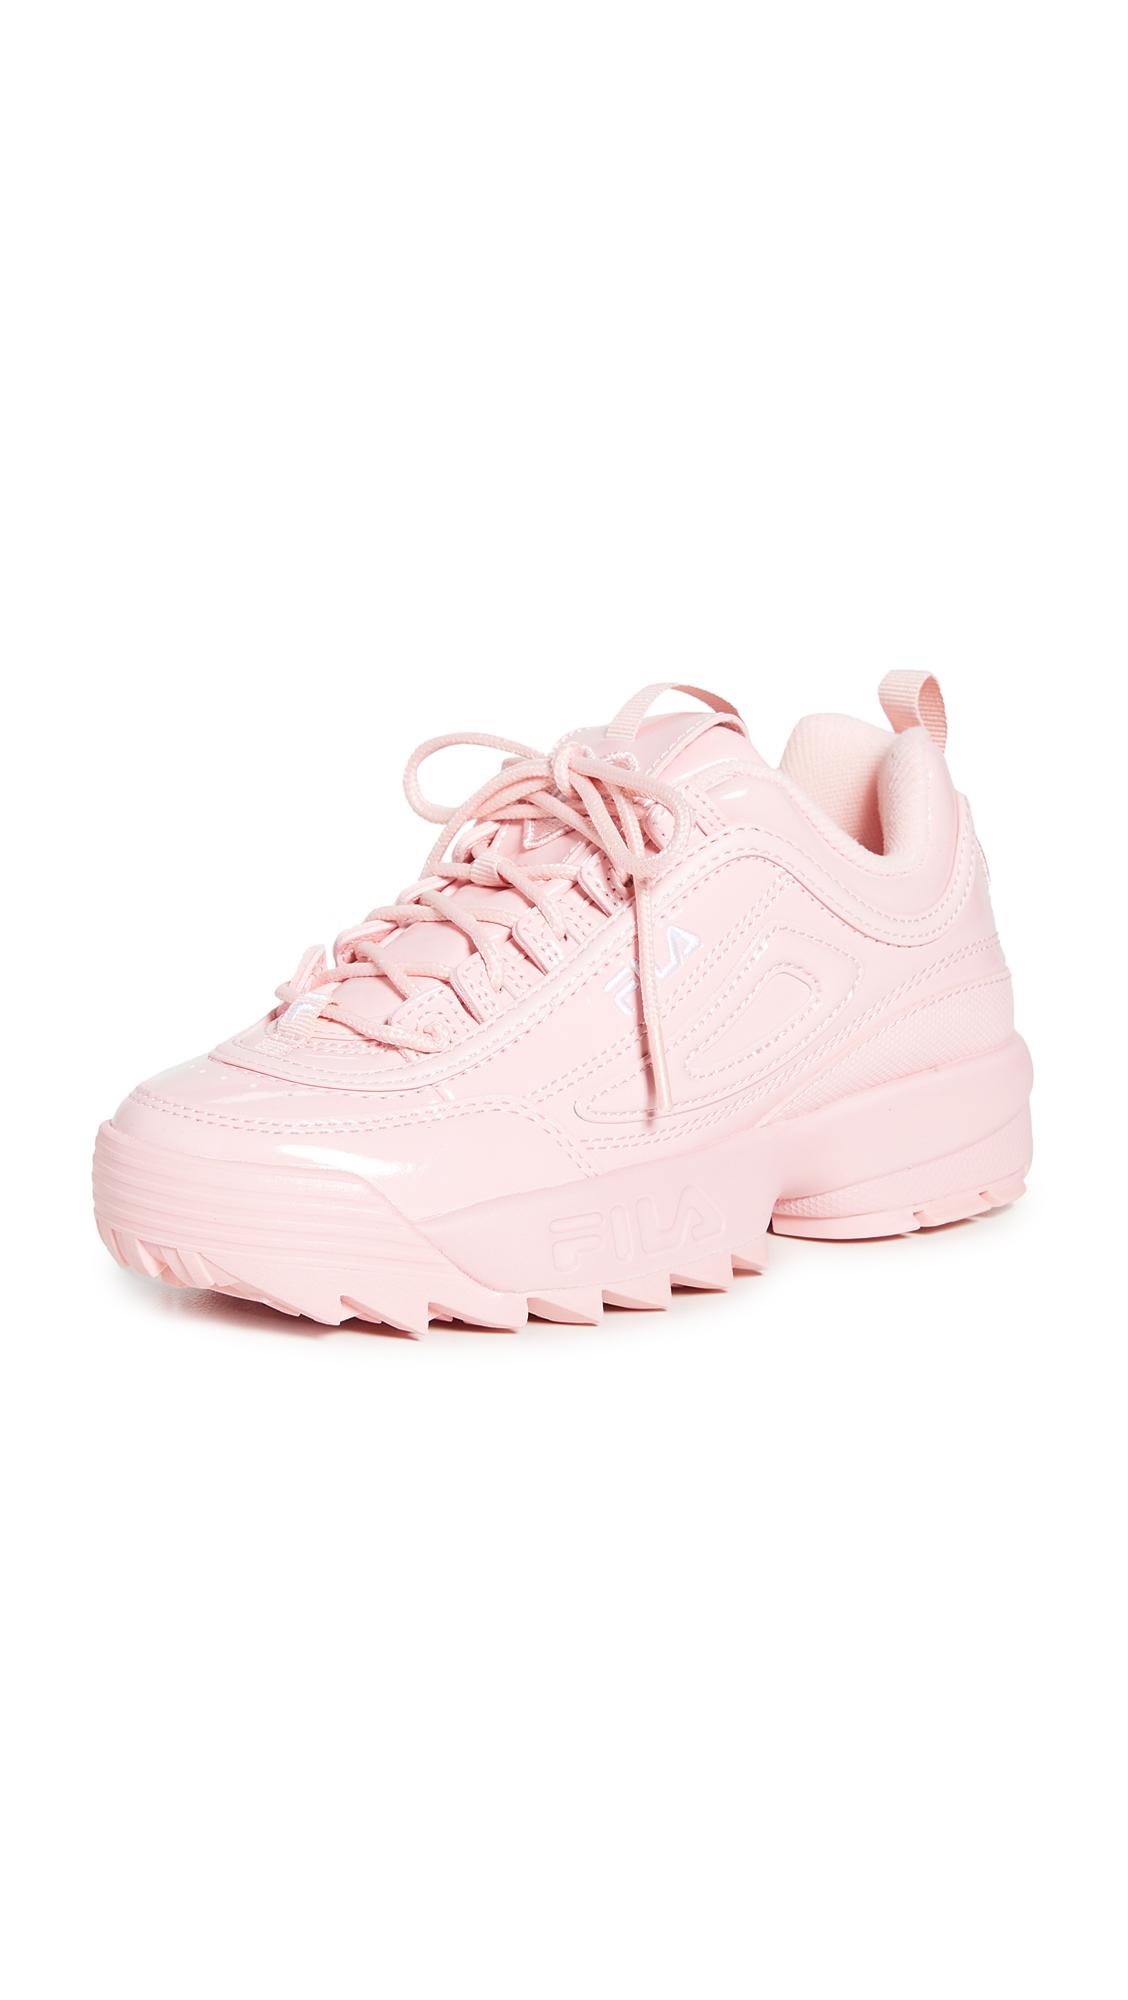 Uitdrukkelijk Vader fage schuif Fila Disruptor Ii Heart Sneakers in Pink | Lyst